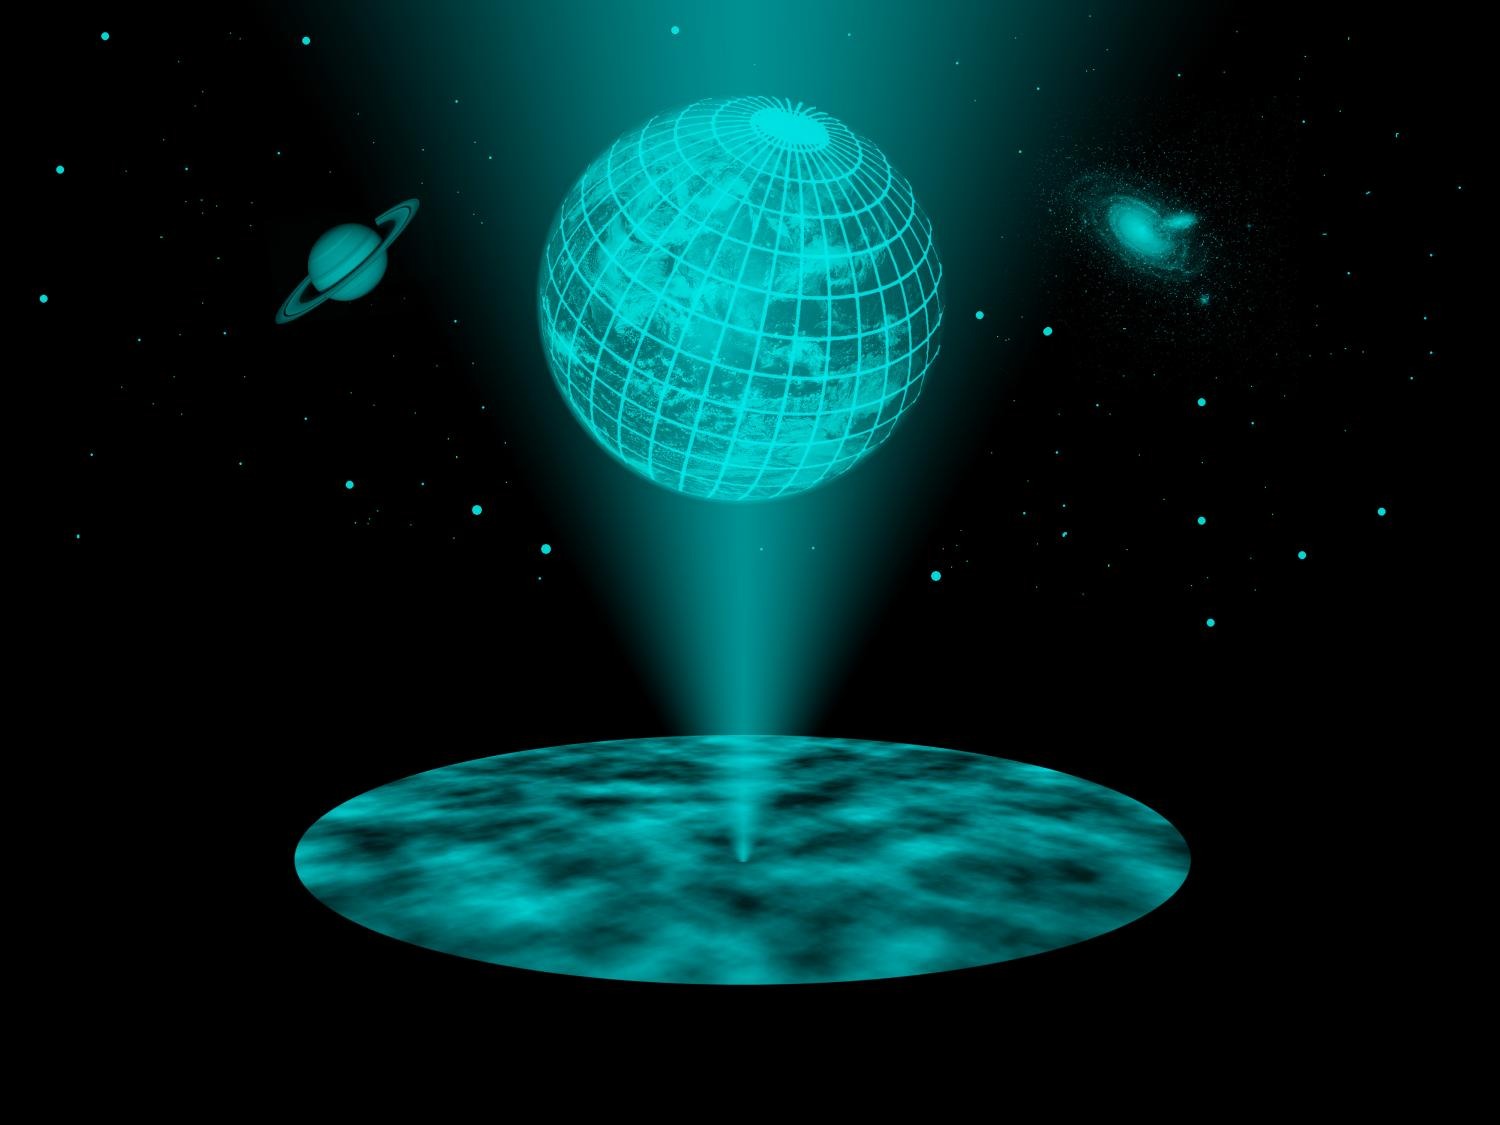 Vũ trụ có thể chỉ là ảo ảnh 3 chiều khổng lồ - hologram